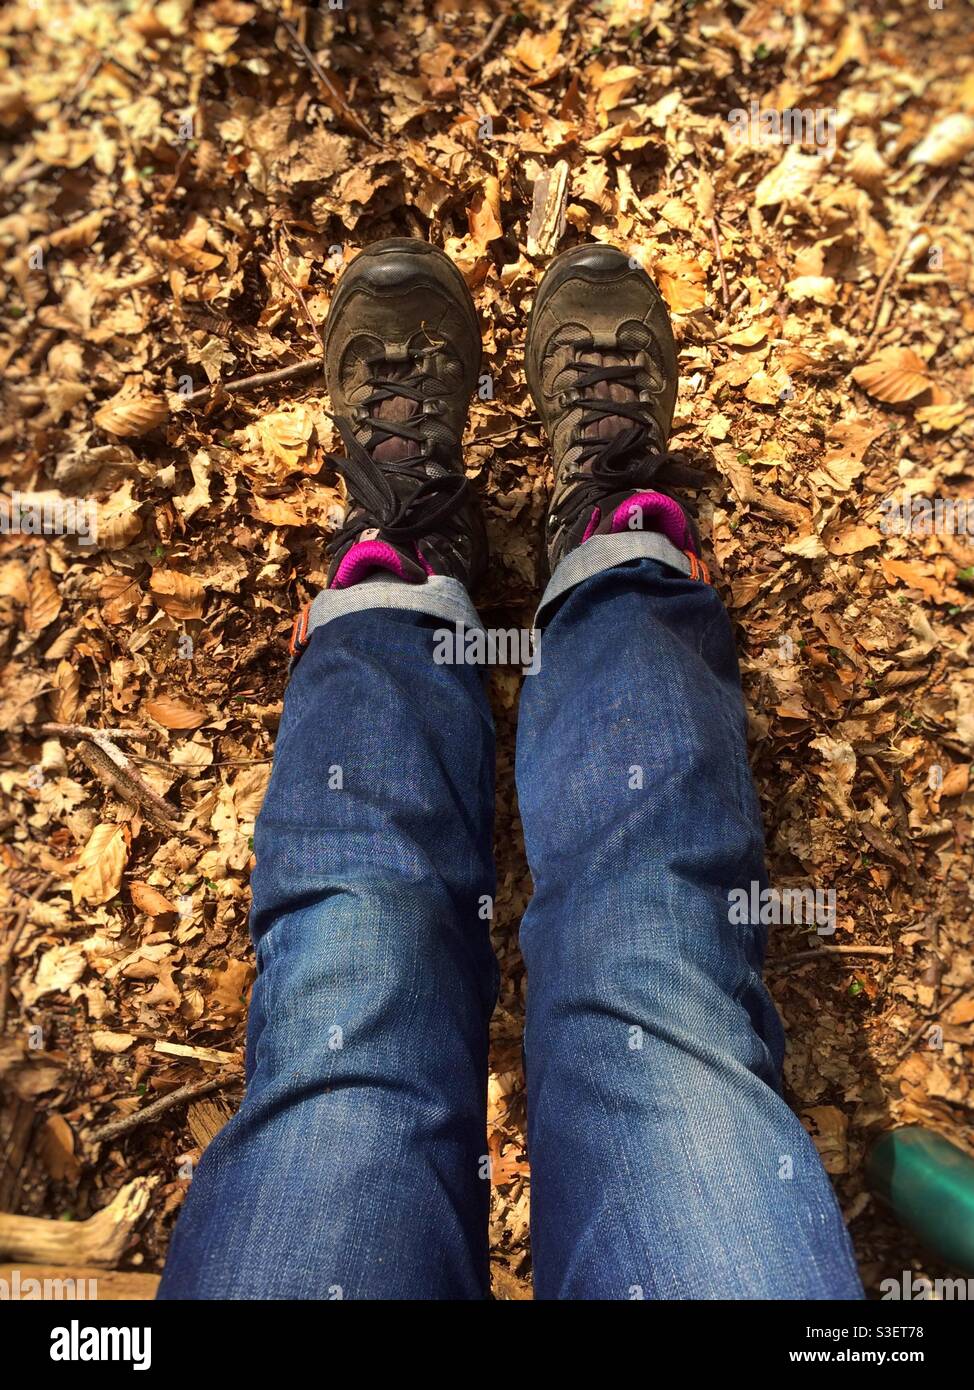 Die Beine einer Frau sind vor ihr ausgestreckt, während sie auf dem mit Blättern übersäten Waldboden sitzt. Sie trägt blaue Jeans und Wanderschuhe. Stockfoto